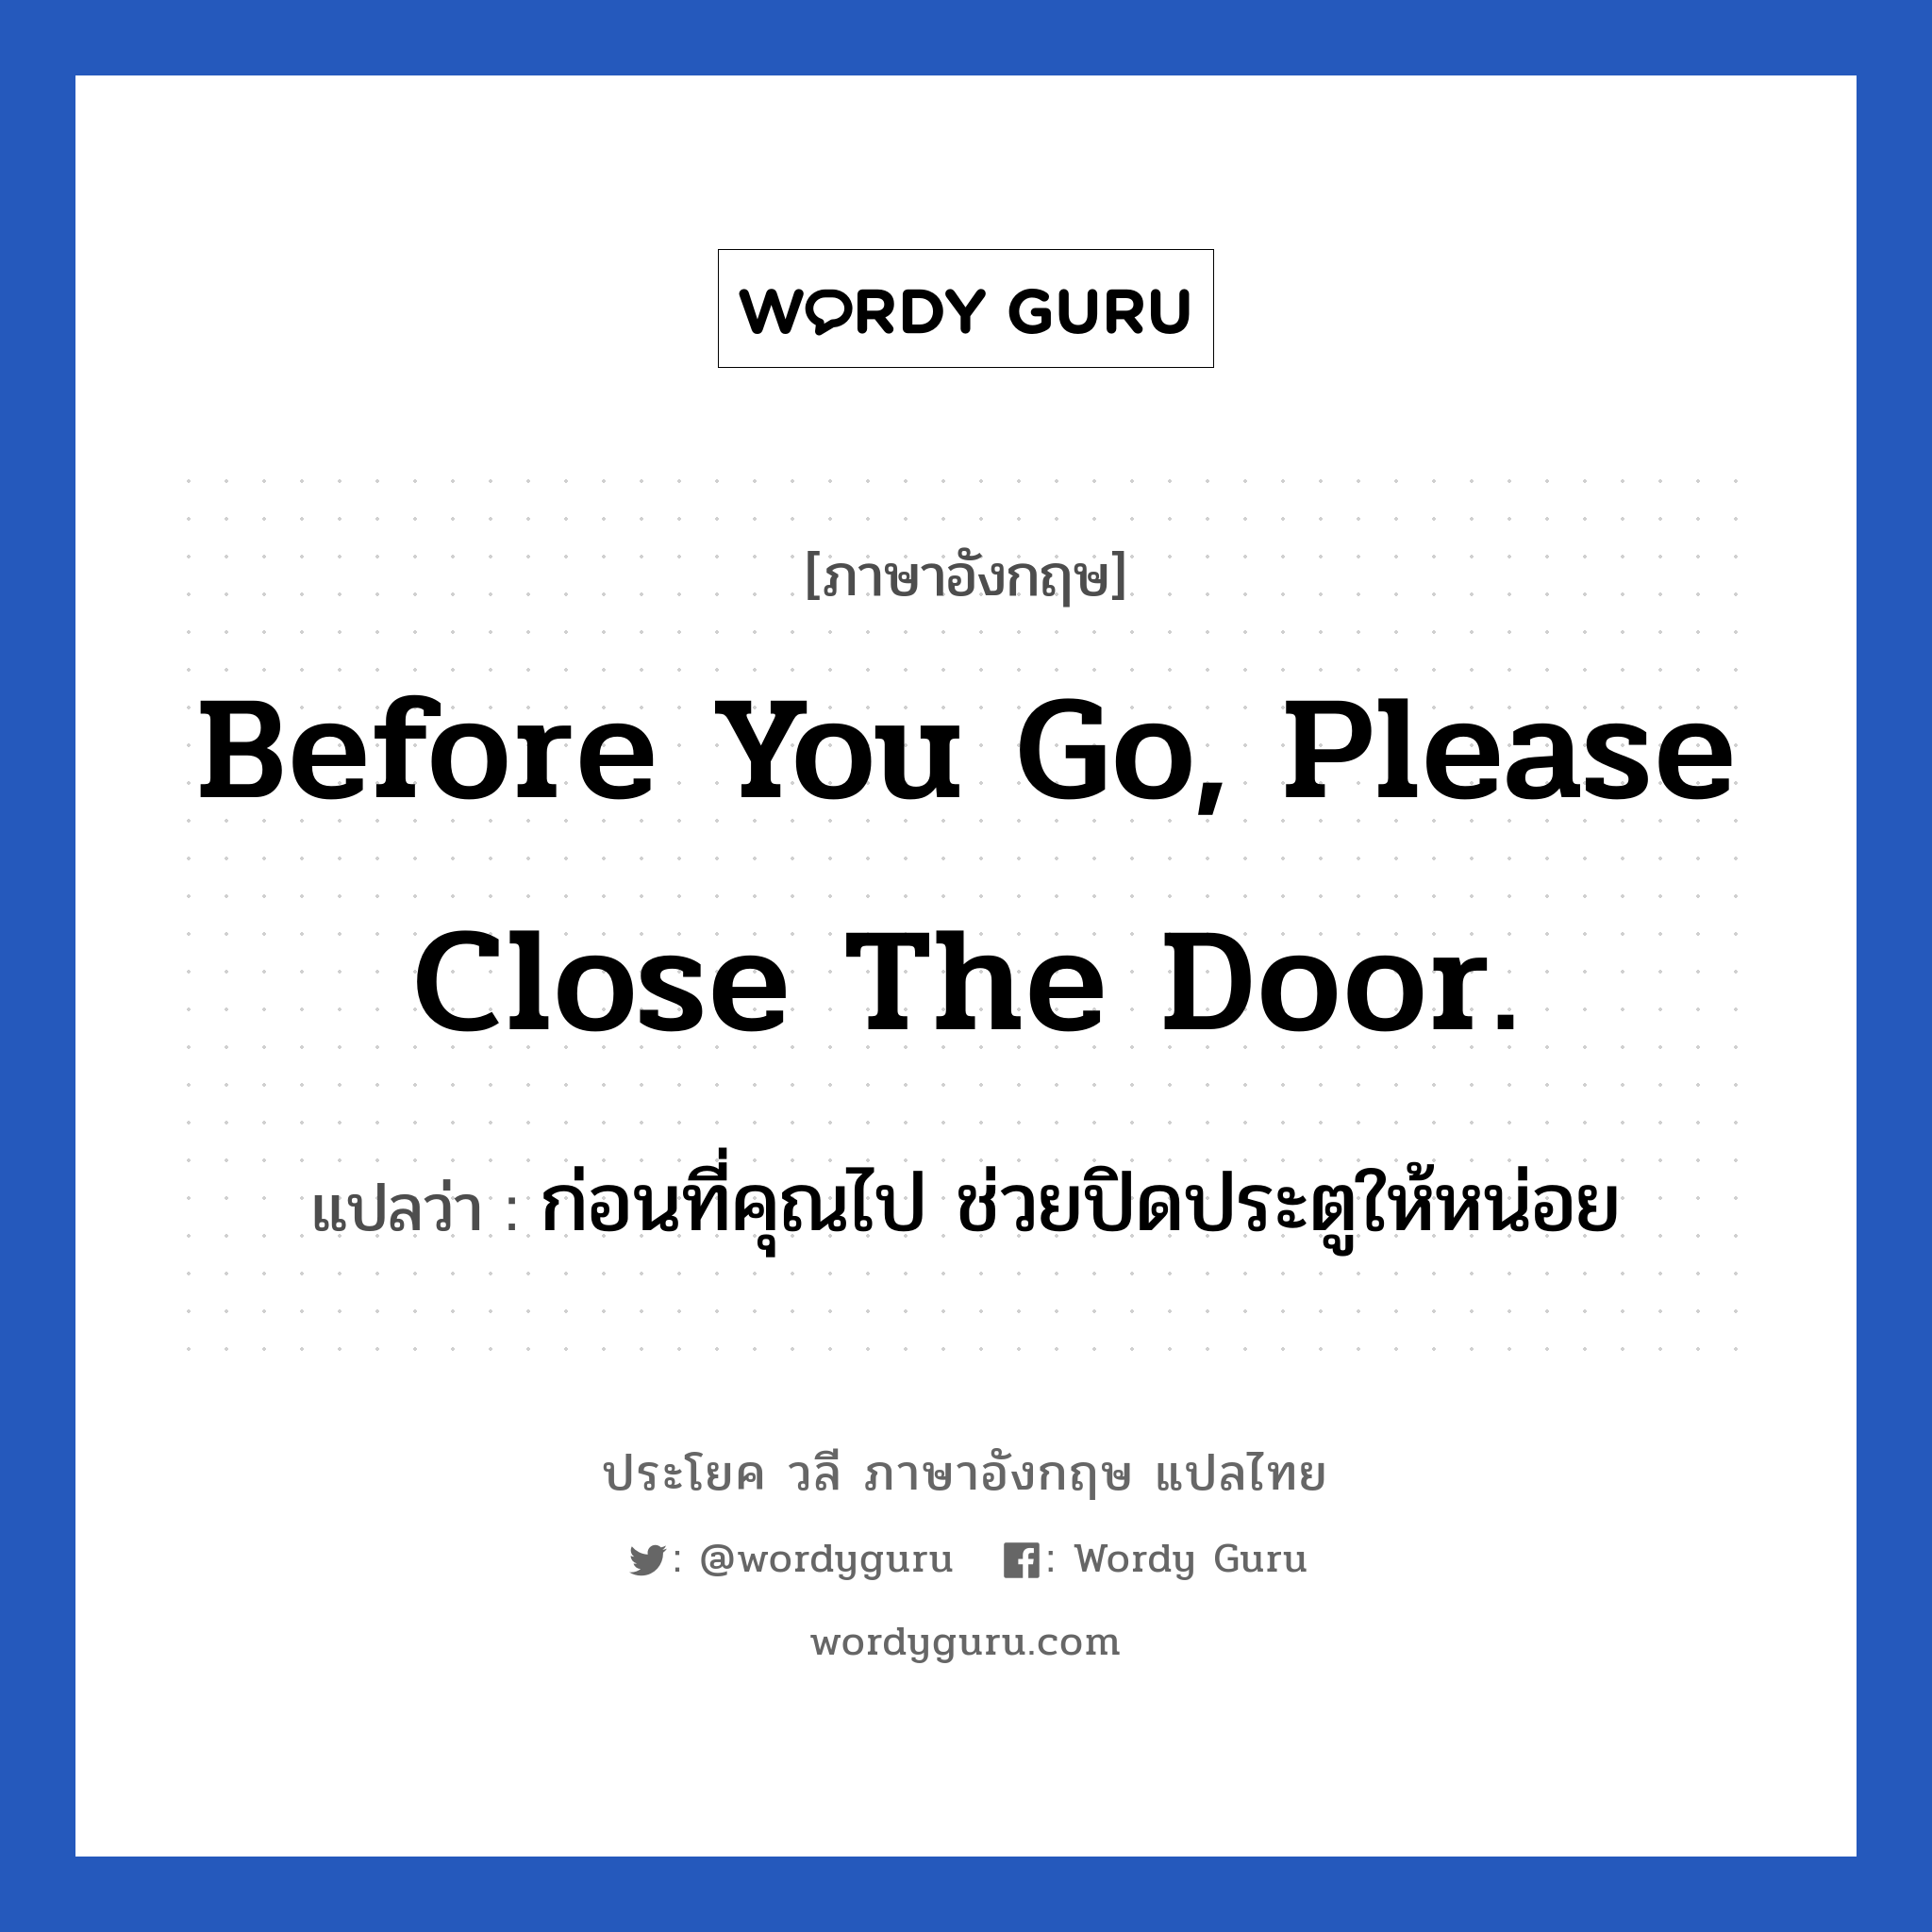 ก่อนที่คุณไป ช่วยปิดประตูให้หน่อย ภาษาอังกฤษ?, วลีภาษาอังกฤษ ก่อนที่คุณไป ช่วยปิดประตูให้หน่อย แปลว่า Before you go, please close the door.